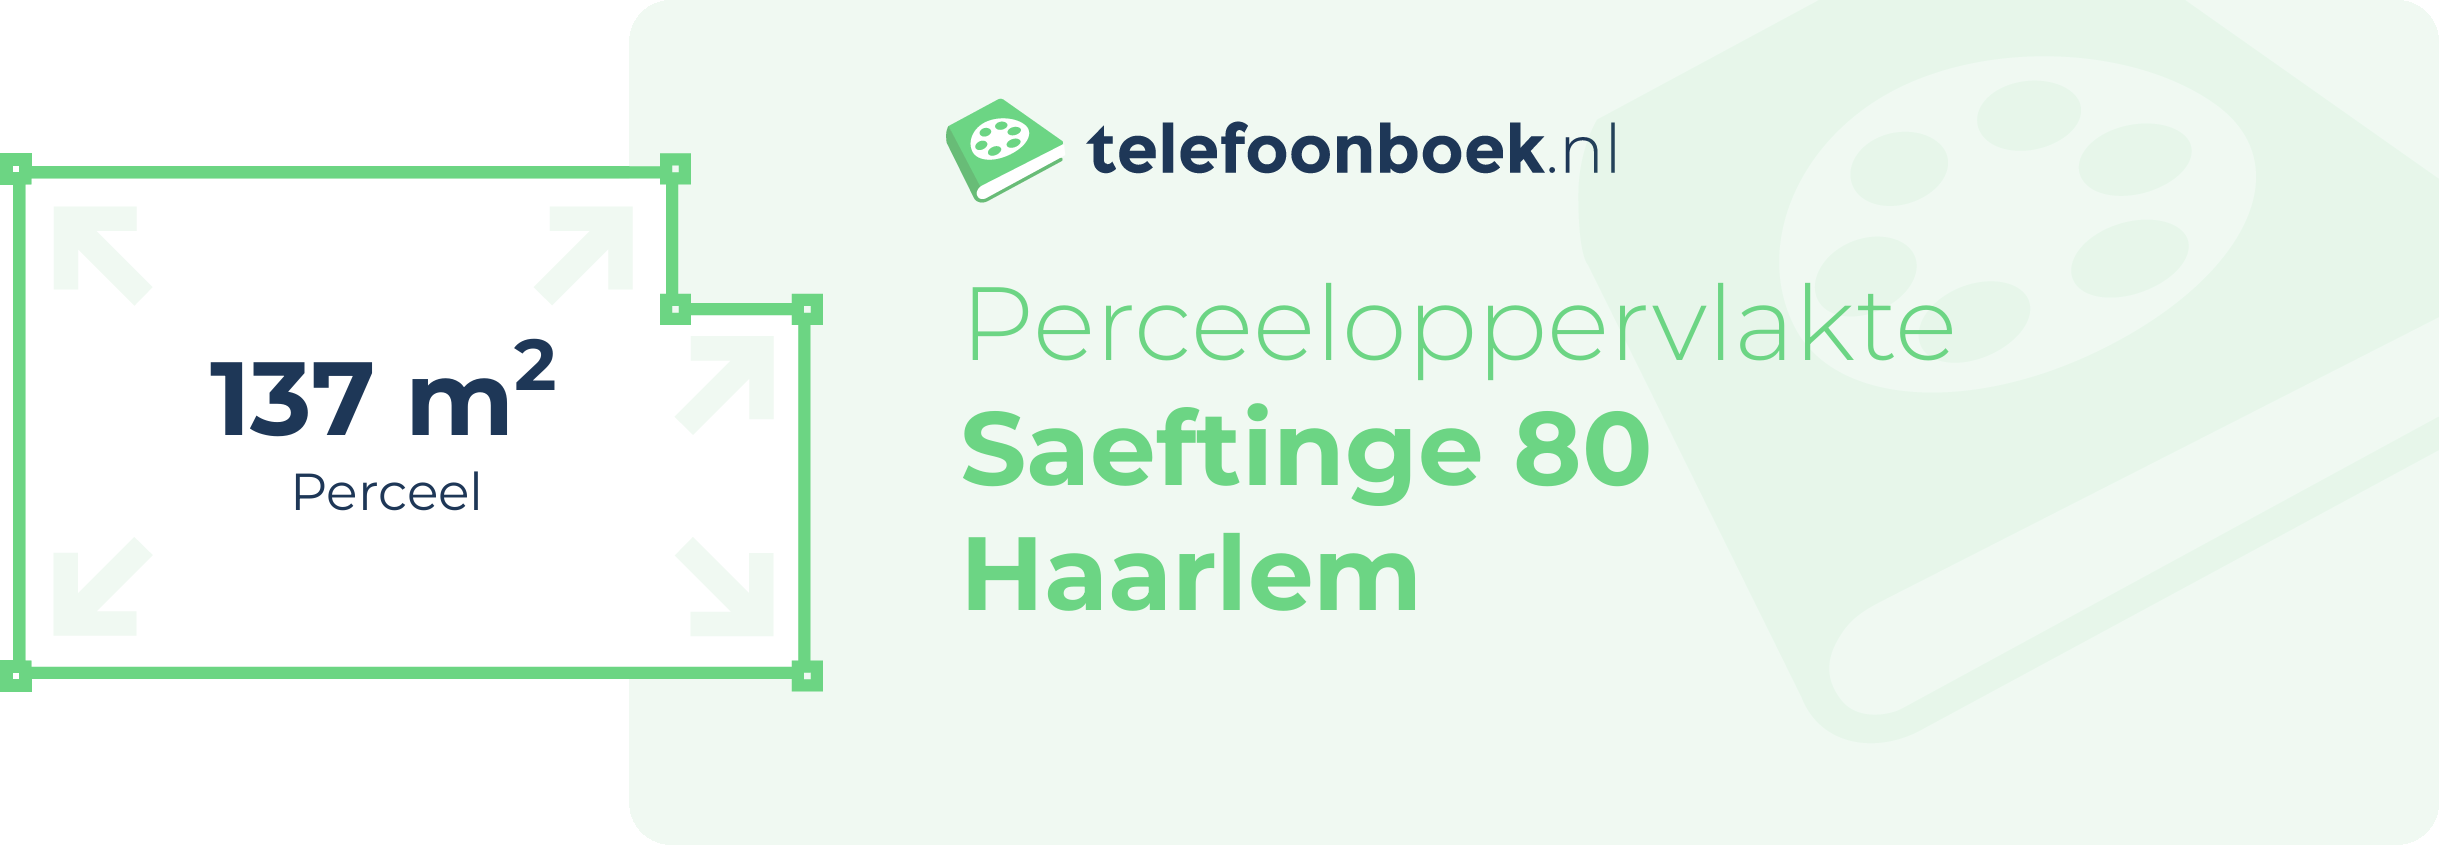 Perceeloppervlakte Saeftinge 80 Haarlem